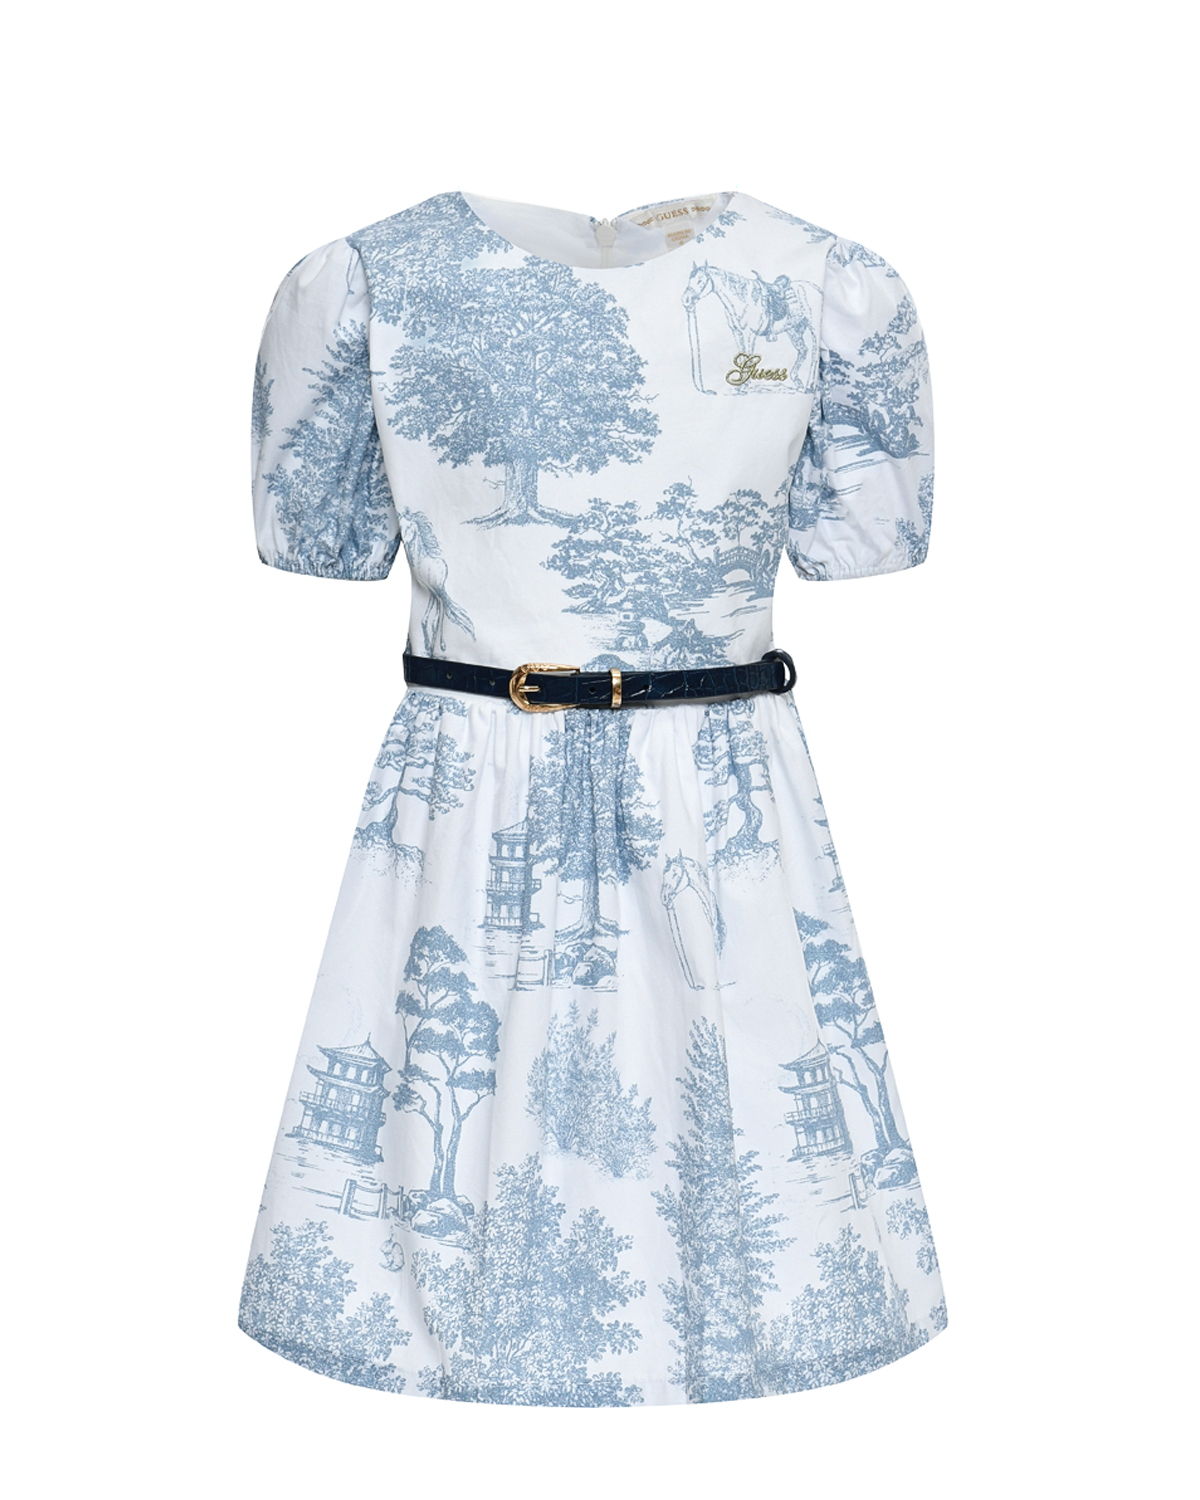 Приталенное платье с голубым принтом Guess, размер 104, цвет мультиколор - фото 1